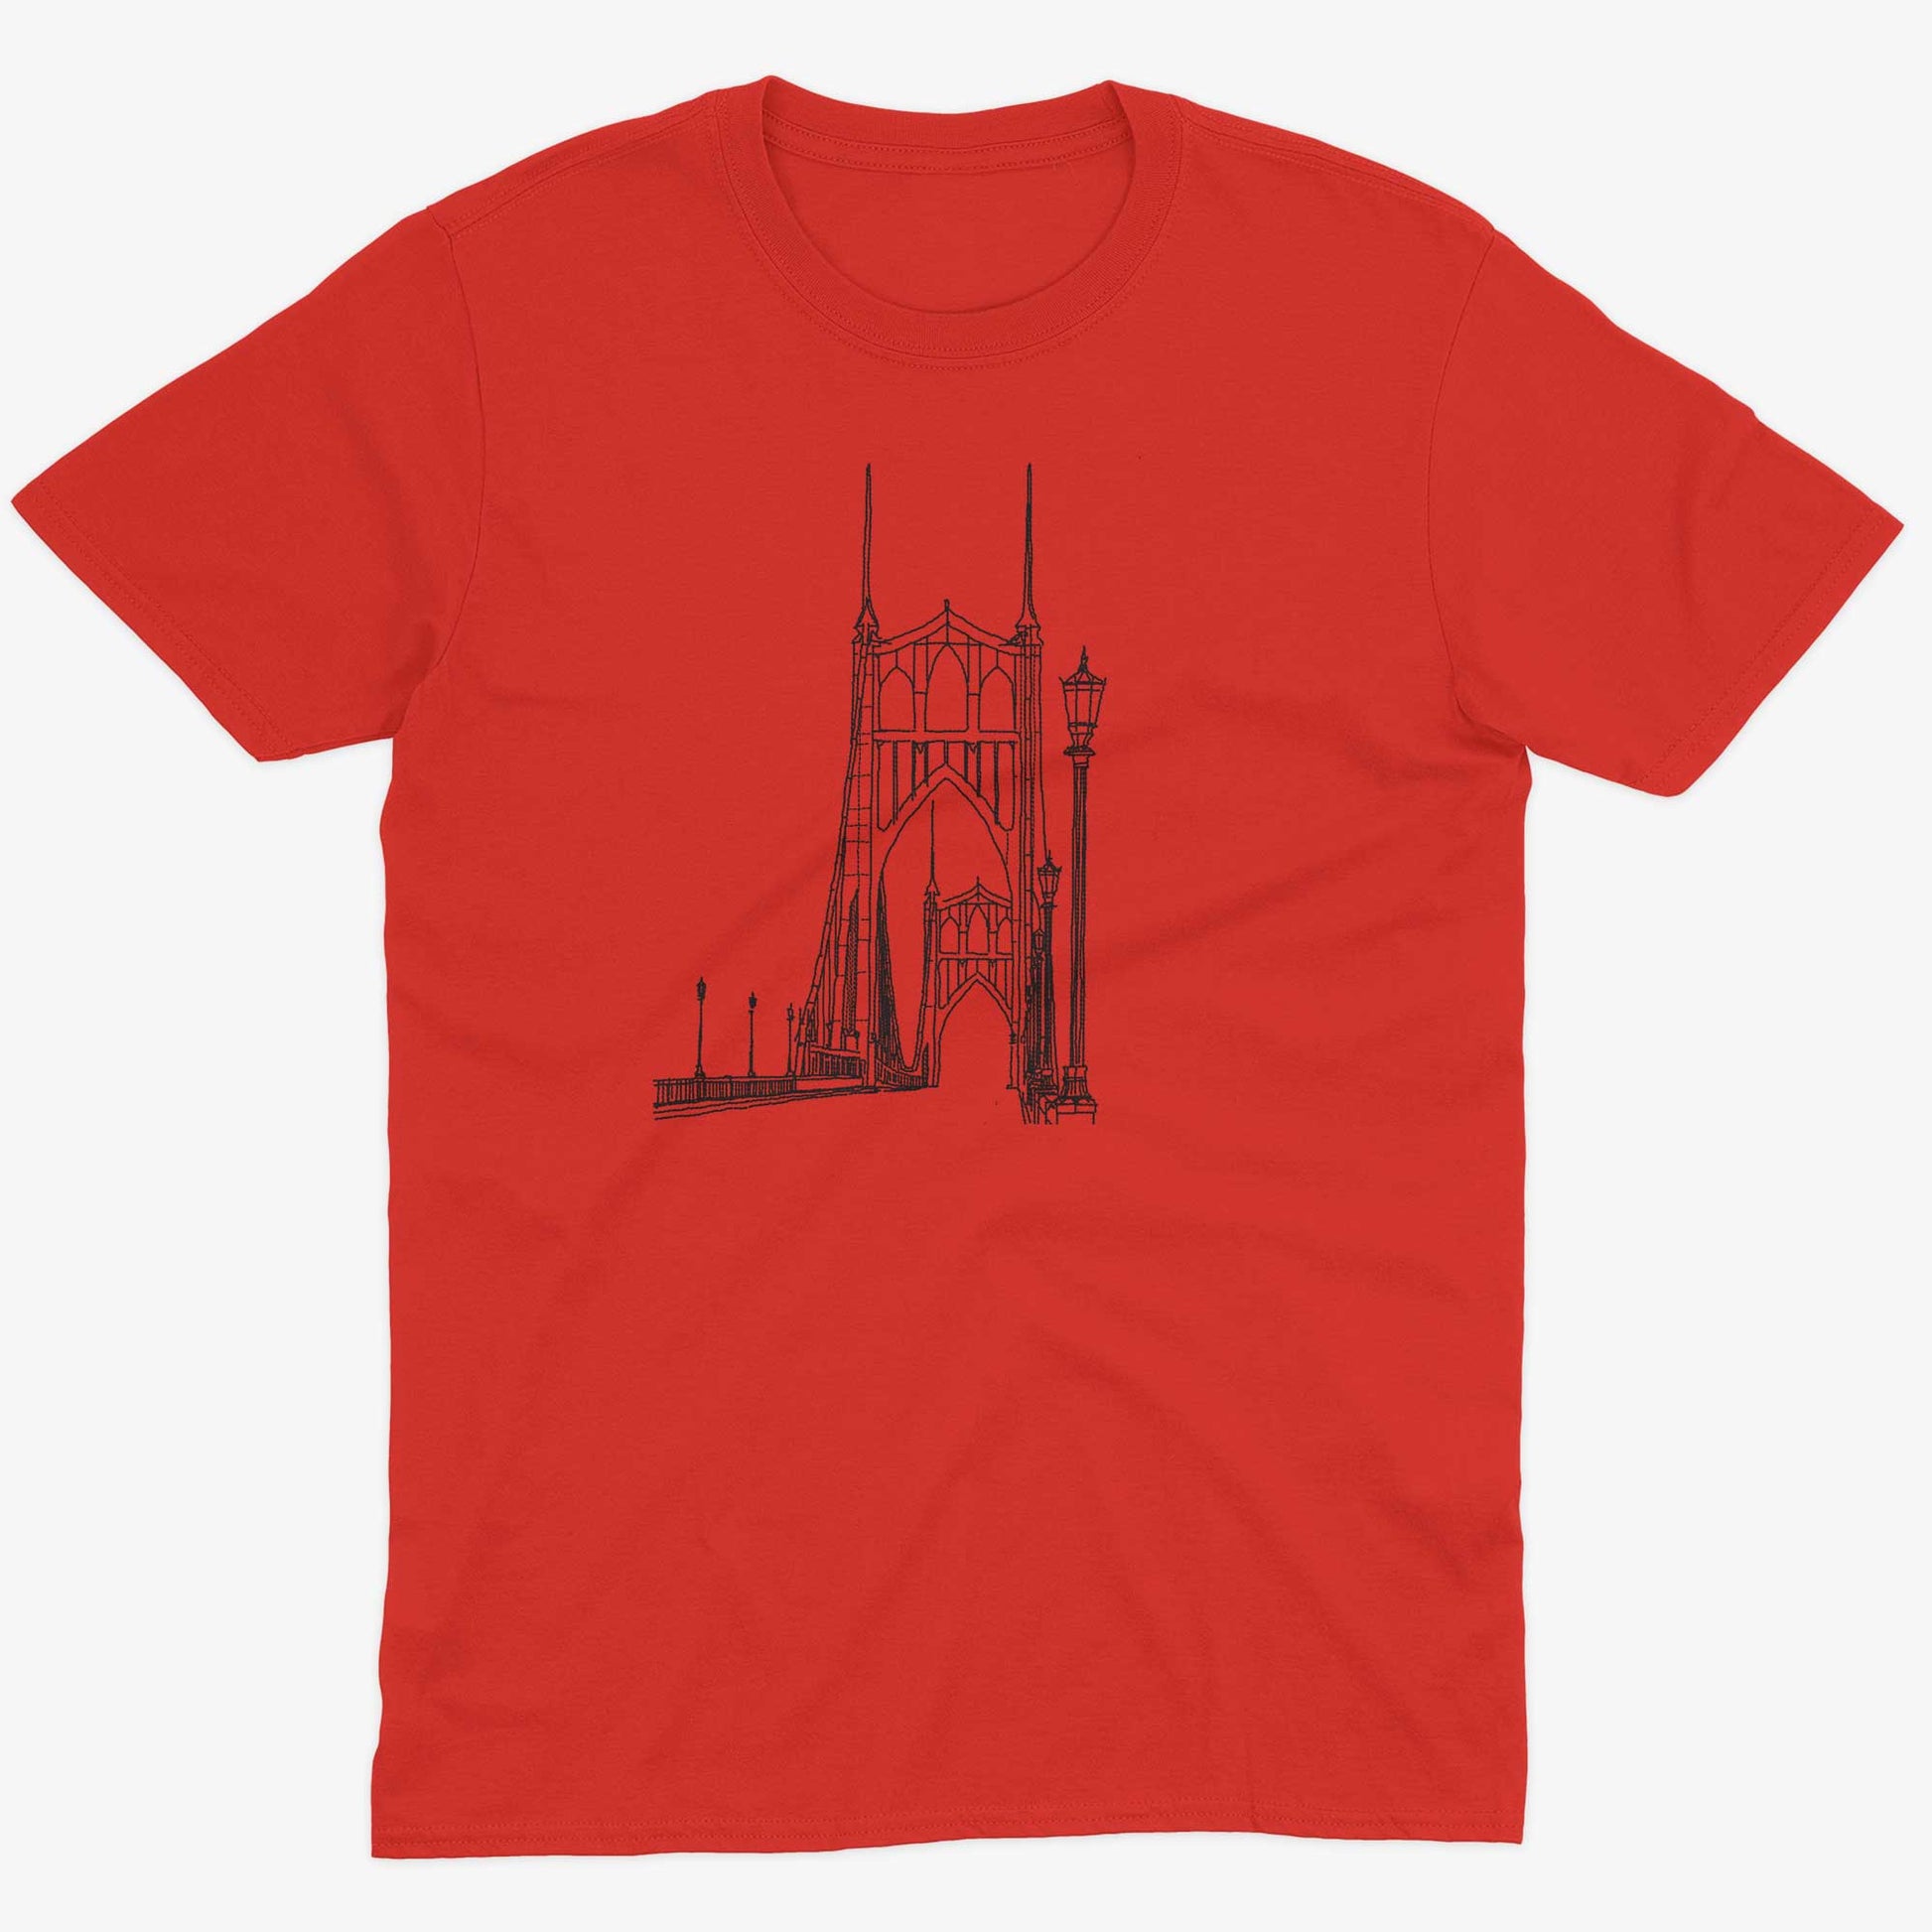 St Johns Bridge Unisex Or Women's Cotton T-shirt-Red-Unisex